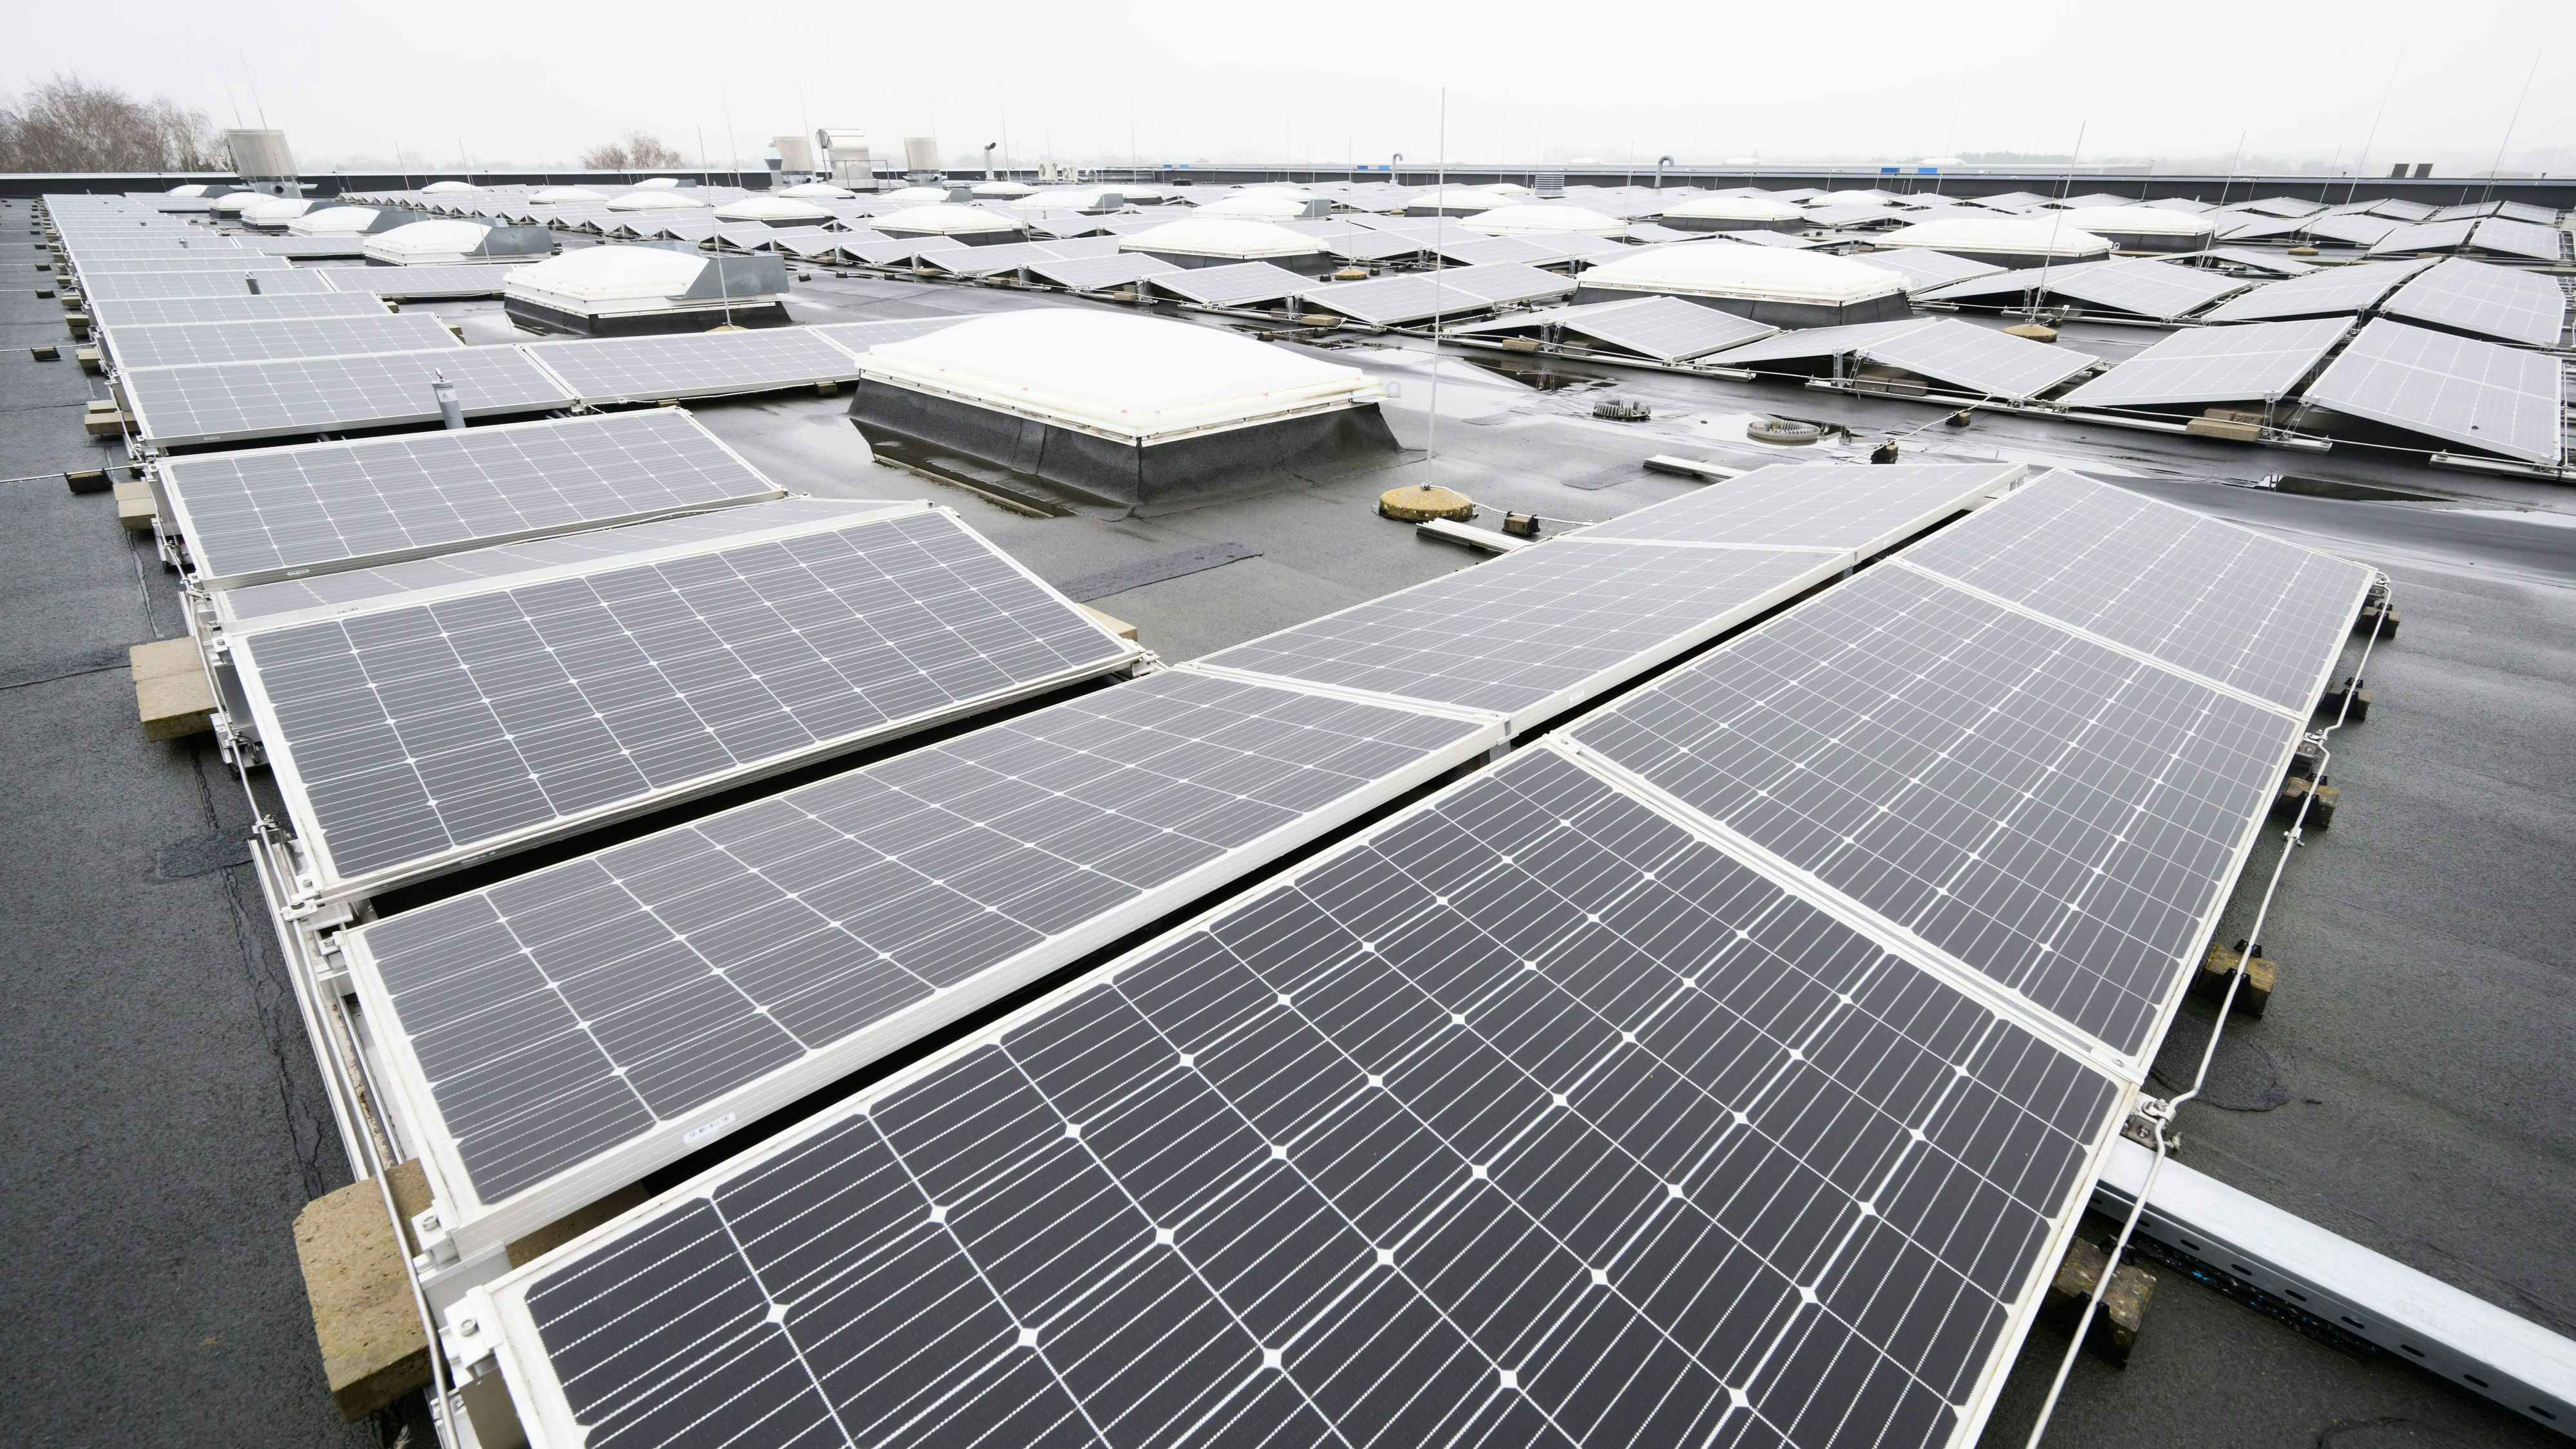 Strom mit Hilfe der Sonne: Die Stadt Damme möchte auf 14 ihrer Gebäude Photovoltaik-Anlagen installieren lassen. Es ist ein langfristig angelegtes Projekt. Foto: dpa/Stratenschulte&nbsp;&nbsp;